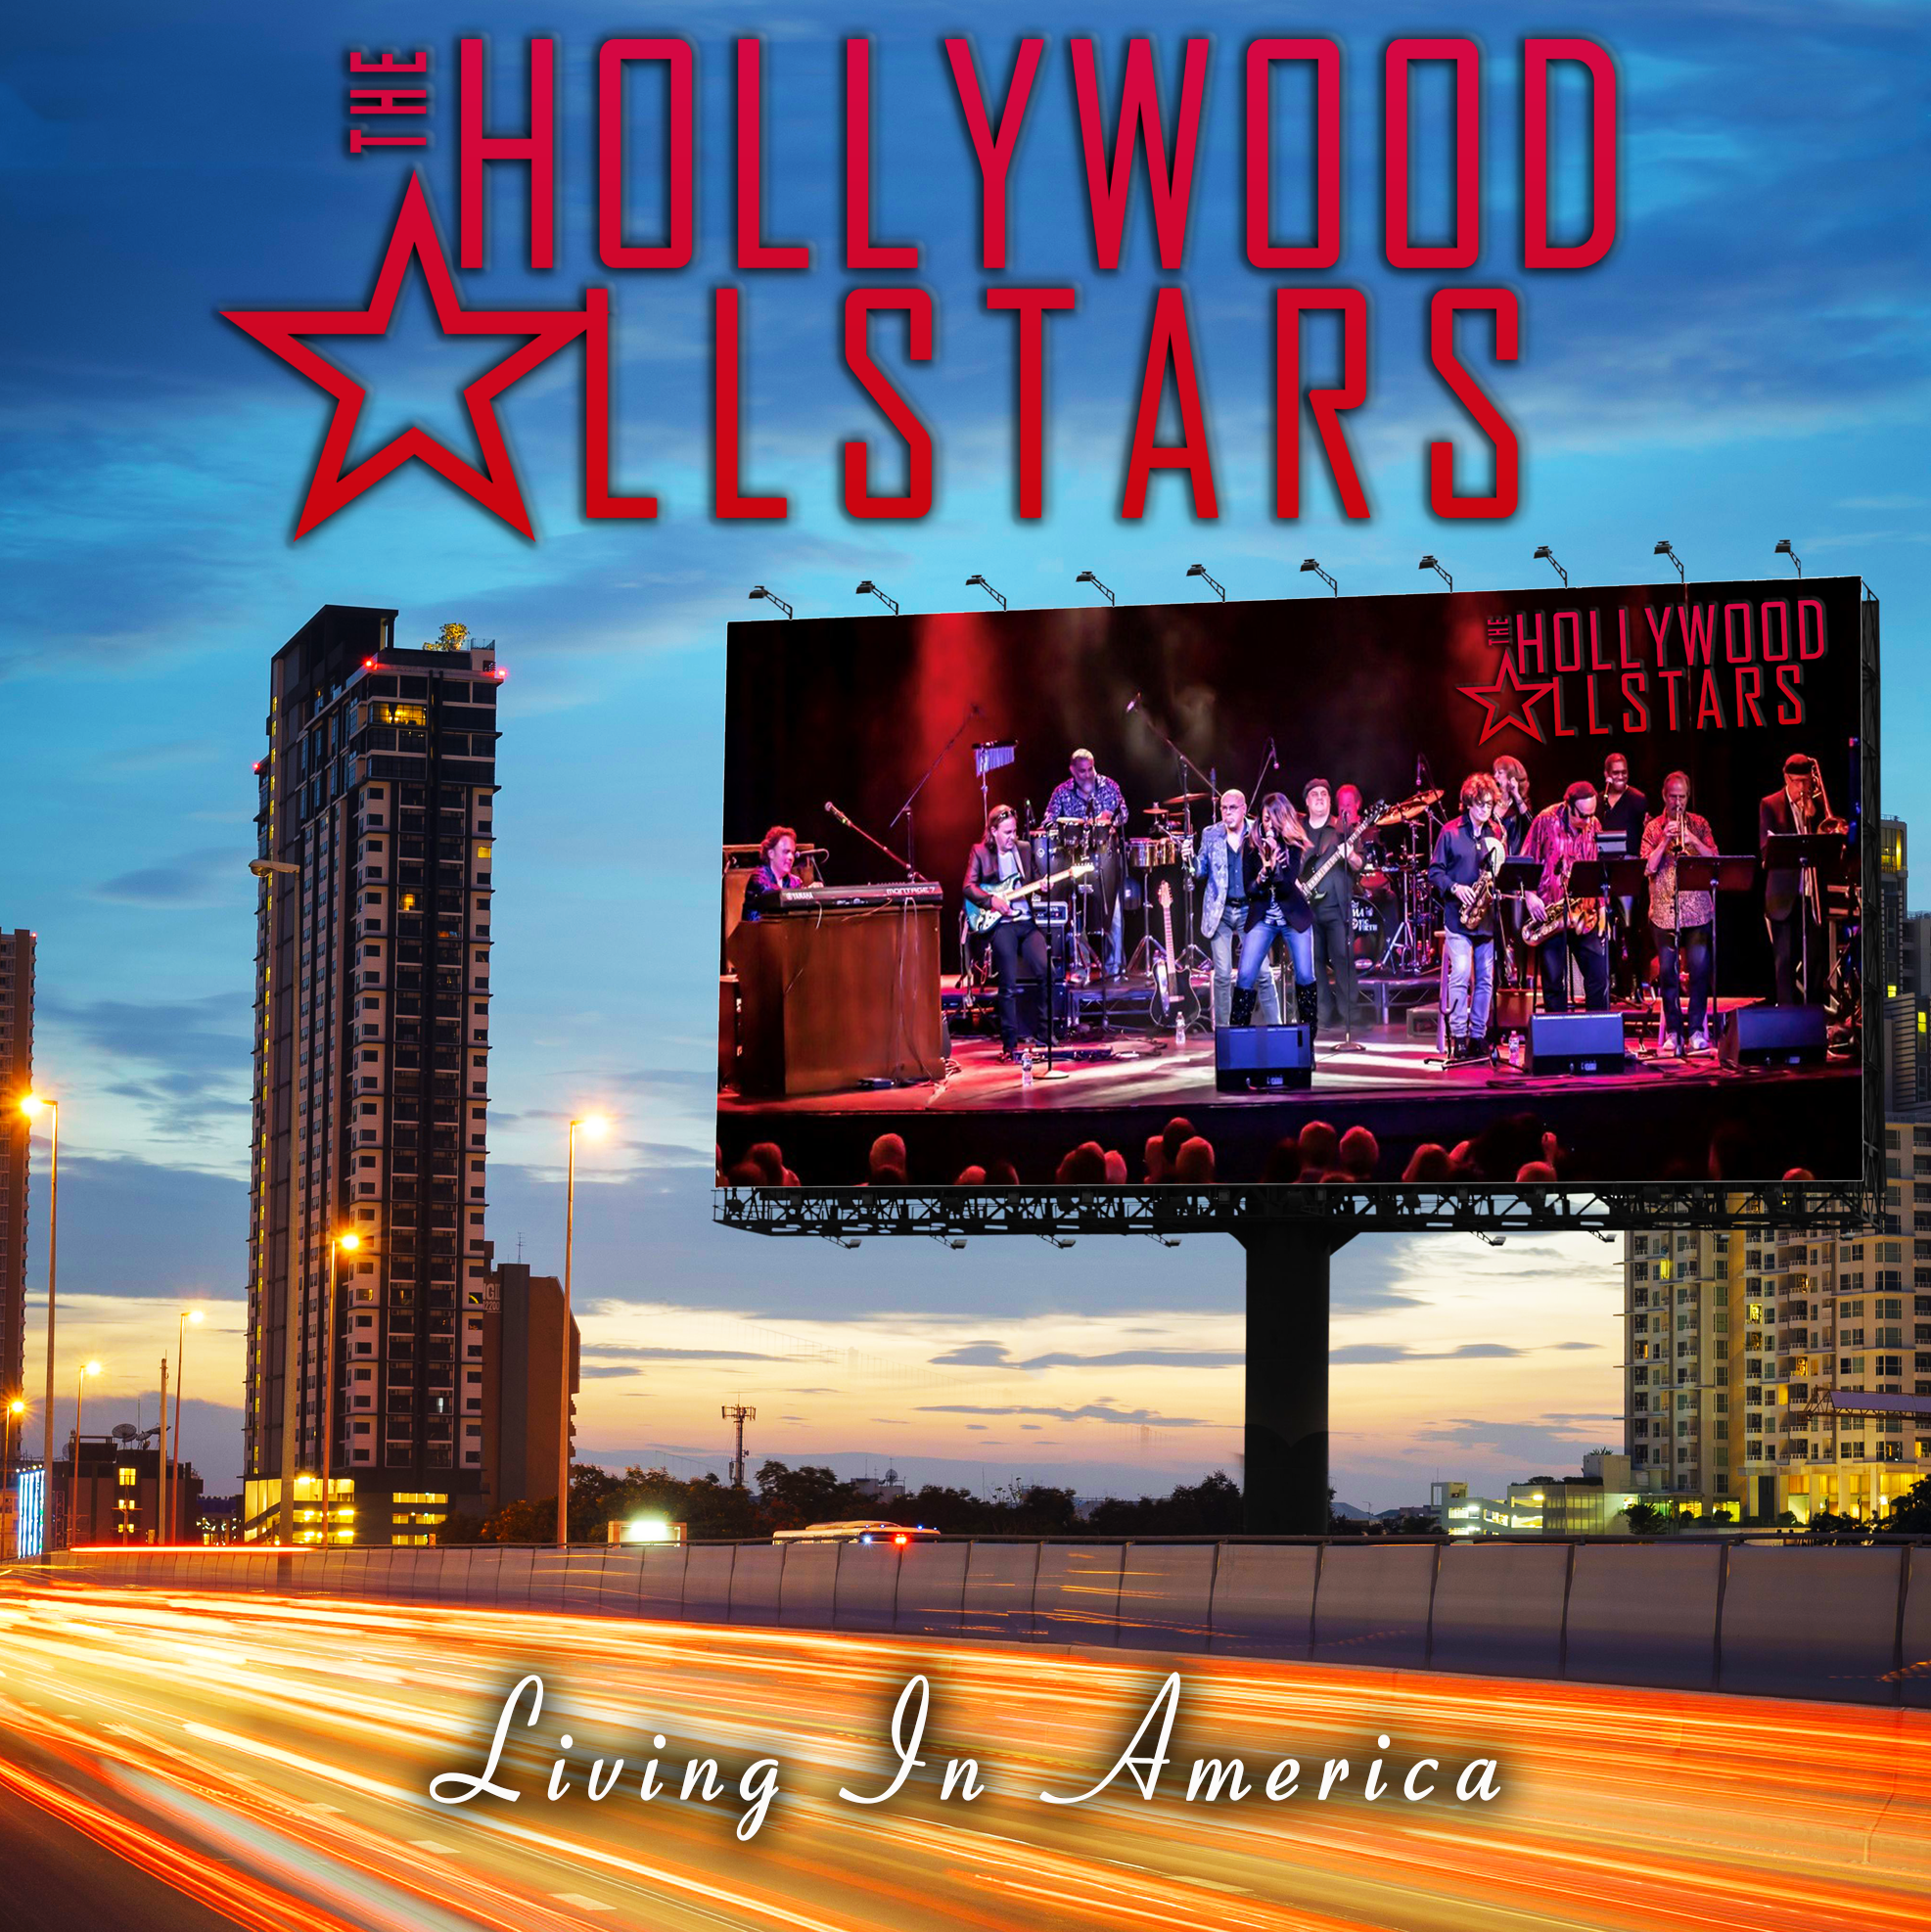 Hollywood Allstars